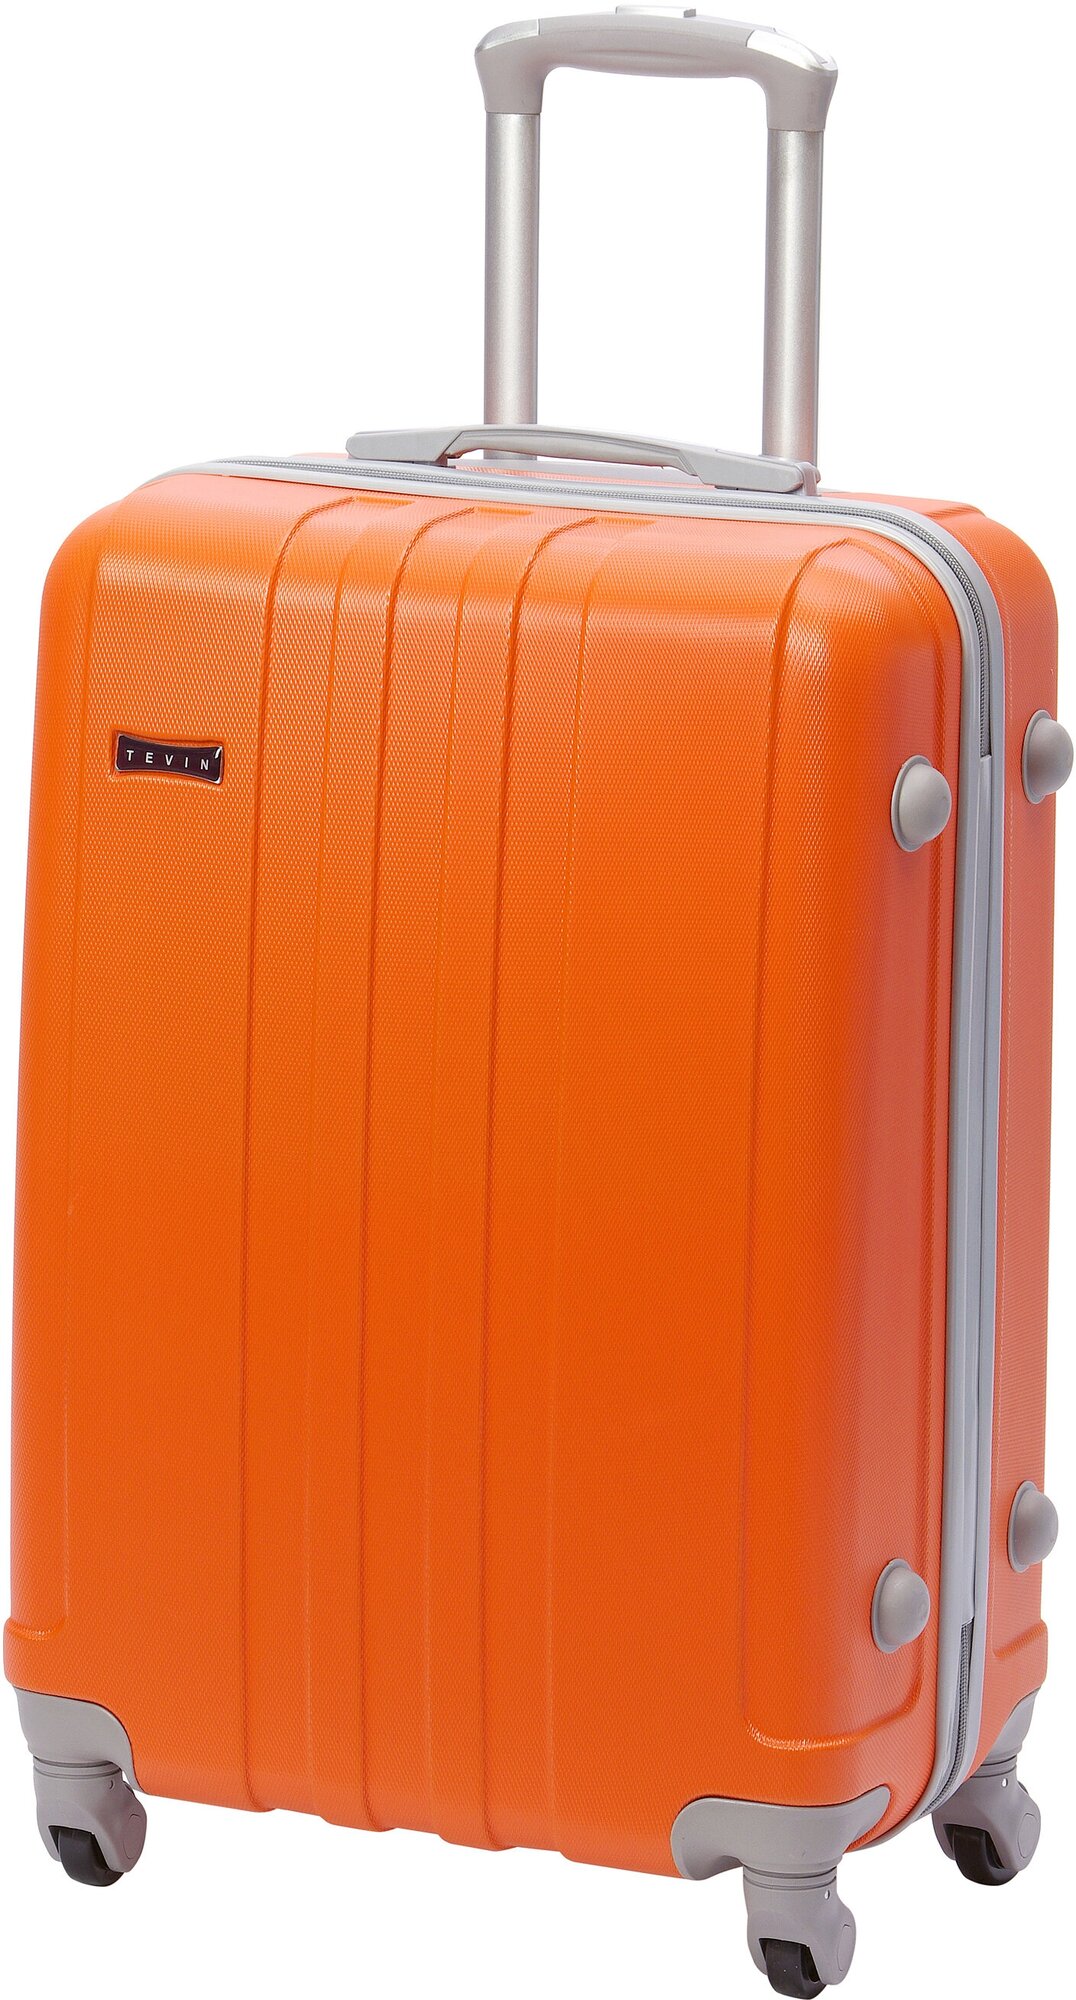 Чемодан на колесах дорожный средний багаж для путешествий женский s+ TEVIN размер С+ 60 см 52 л легкий 2.6 кг прочный abs (абс) пластик Оранжевый